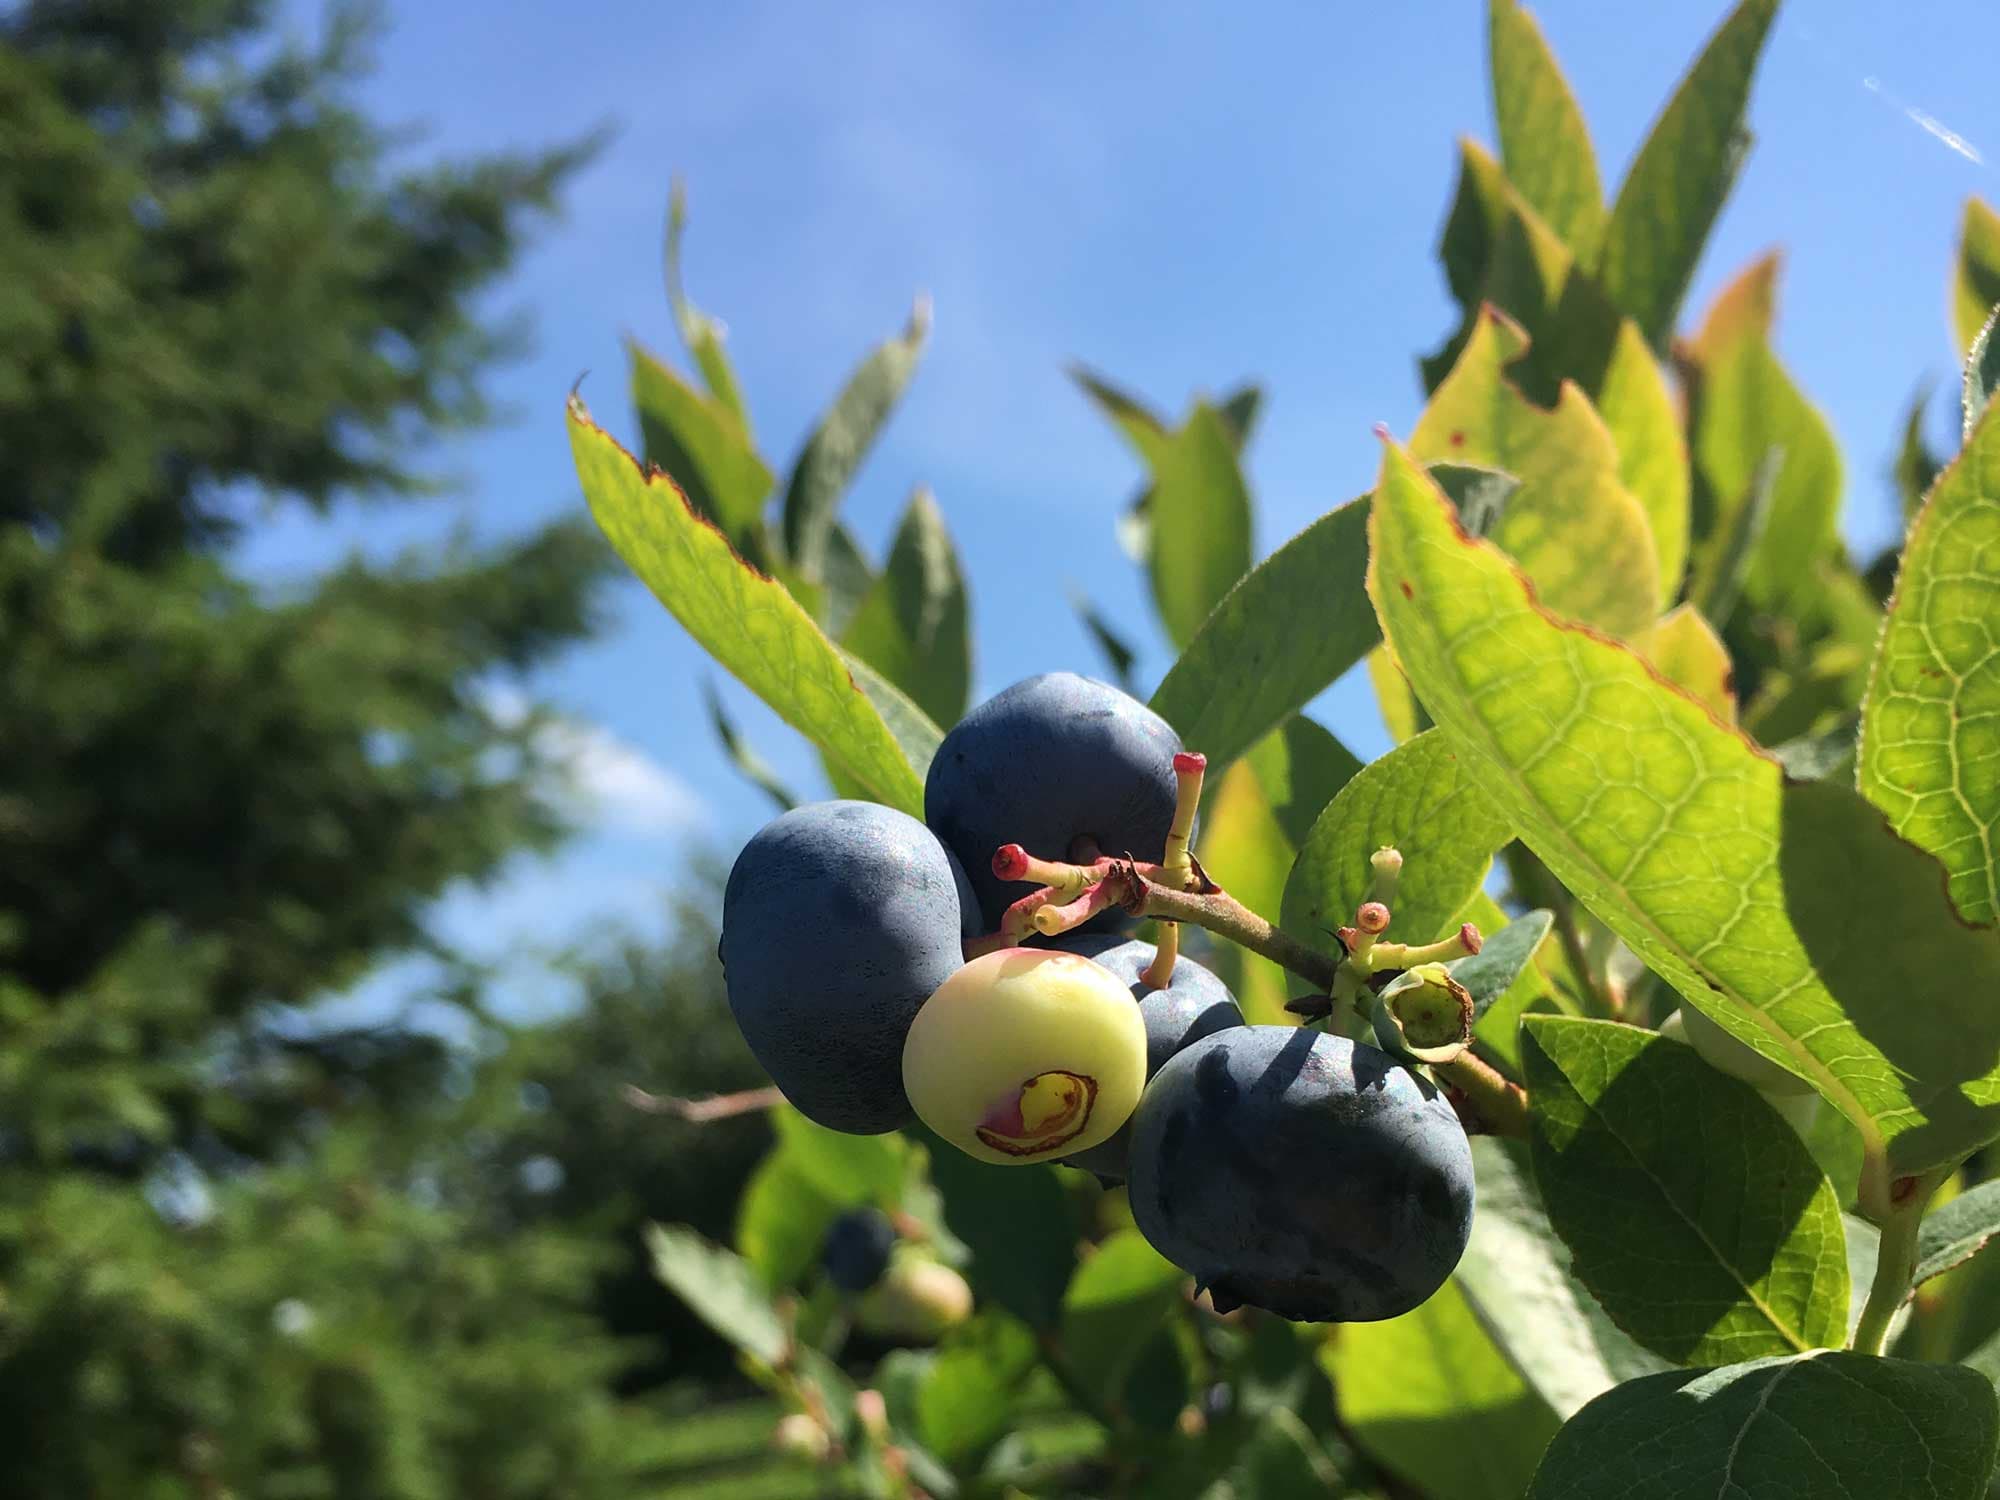 Blueberry bushes